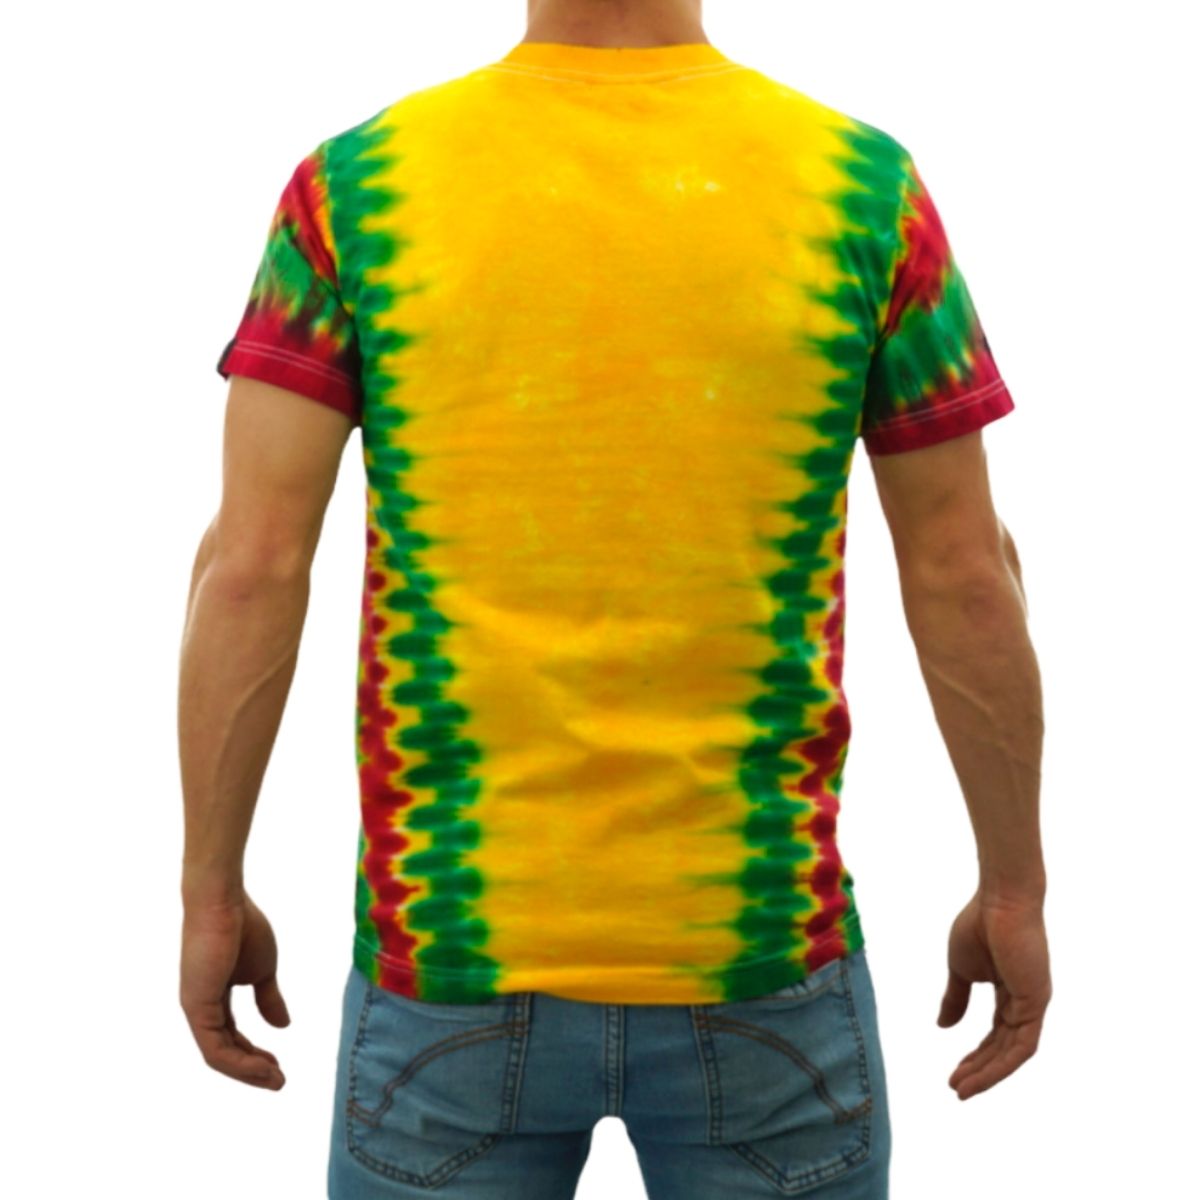 CALI Strong King Rasta T-shirt Tie Dye - T-Shirt - Image 3 - CALI Strong